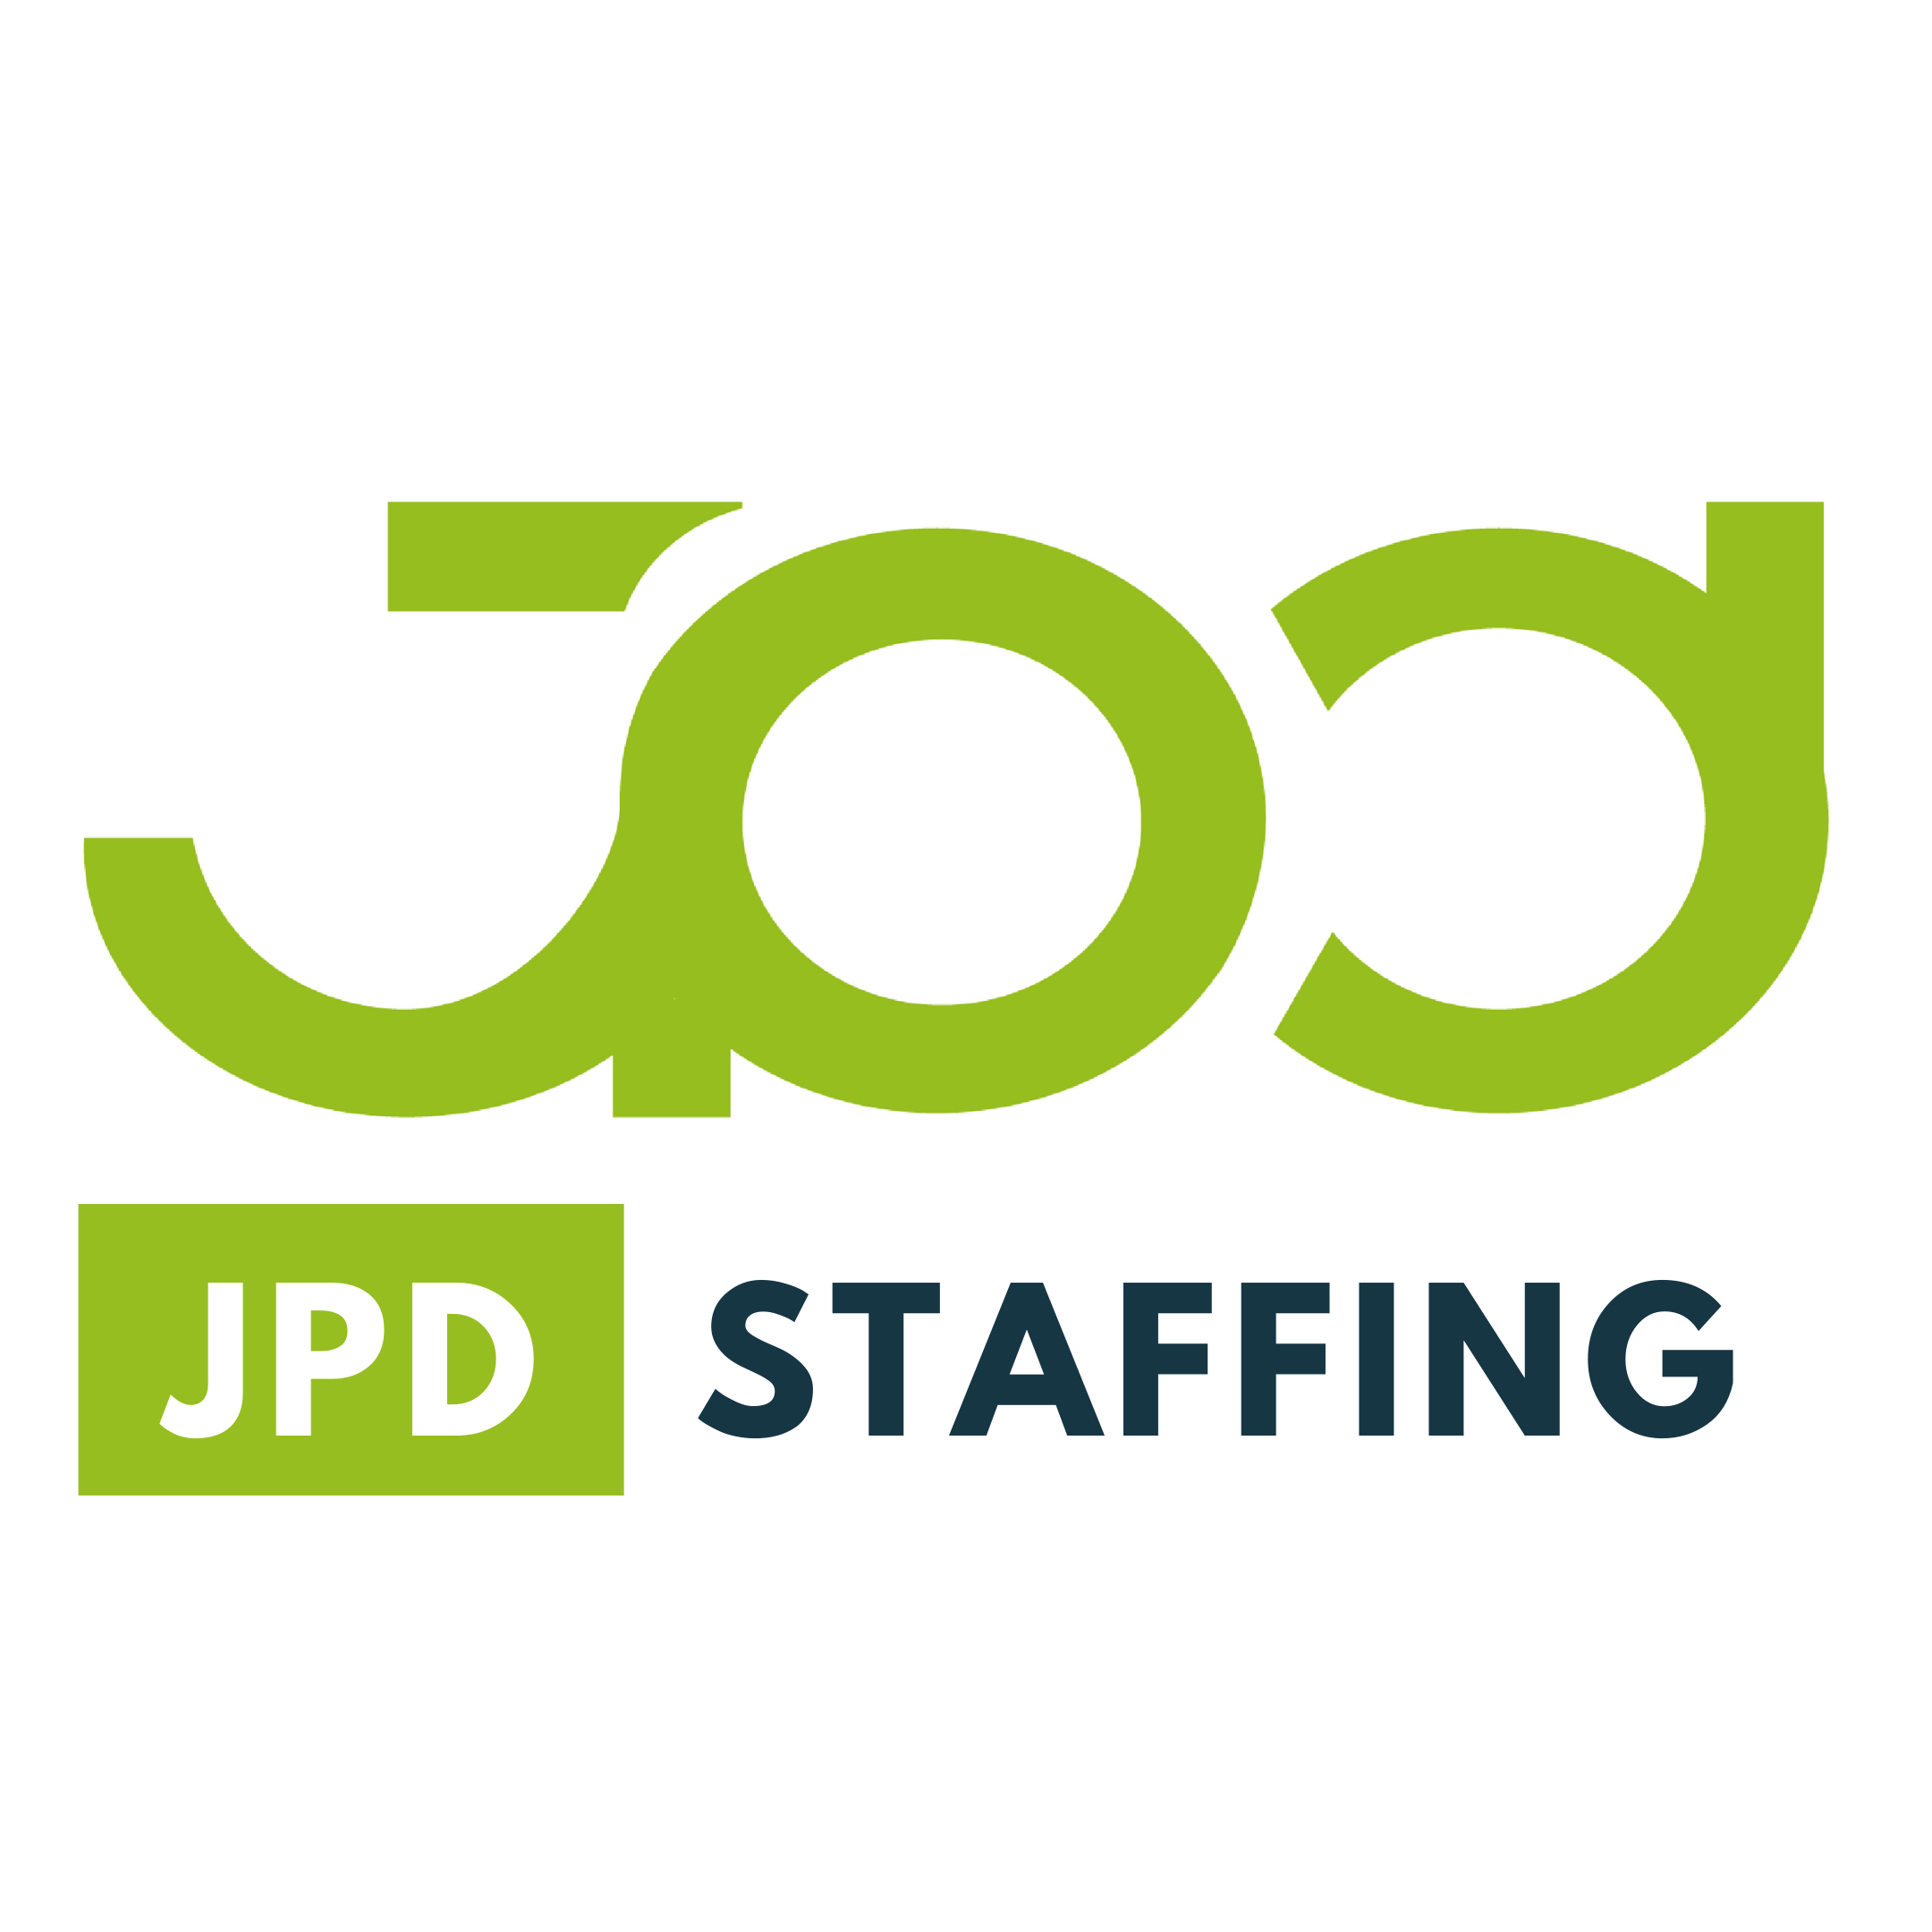 JPD Staffing 